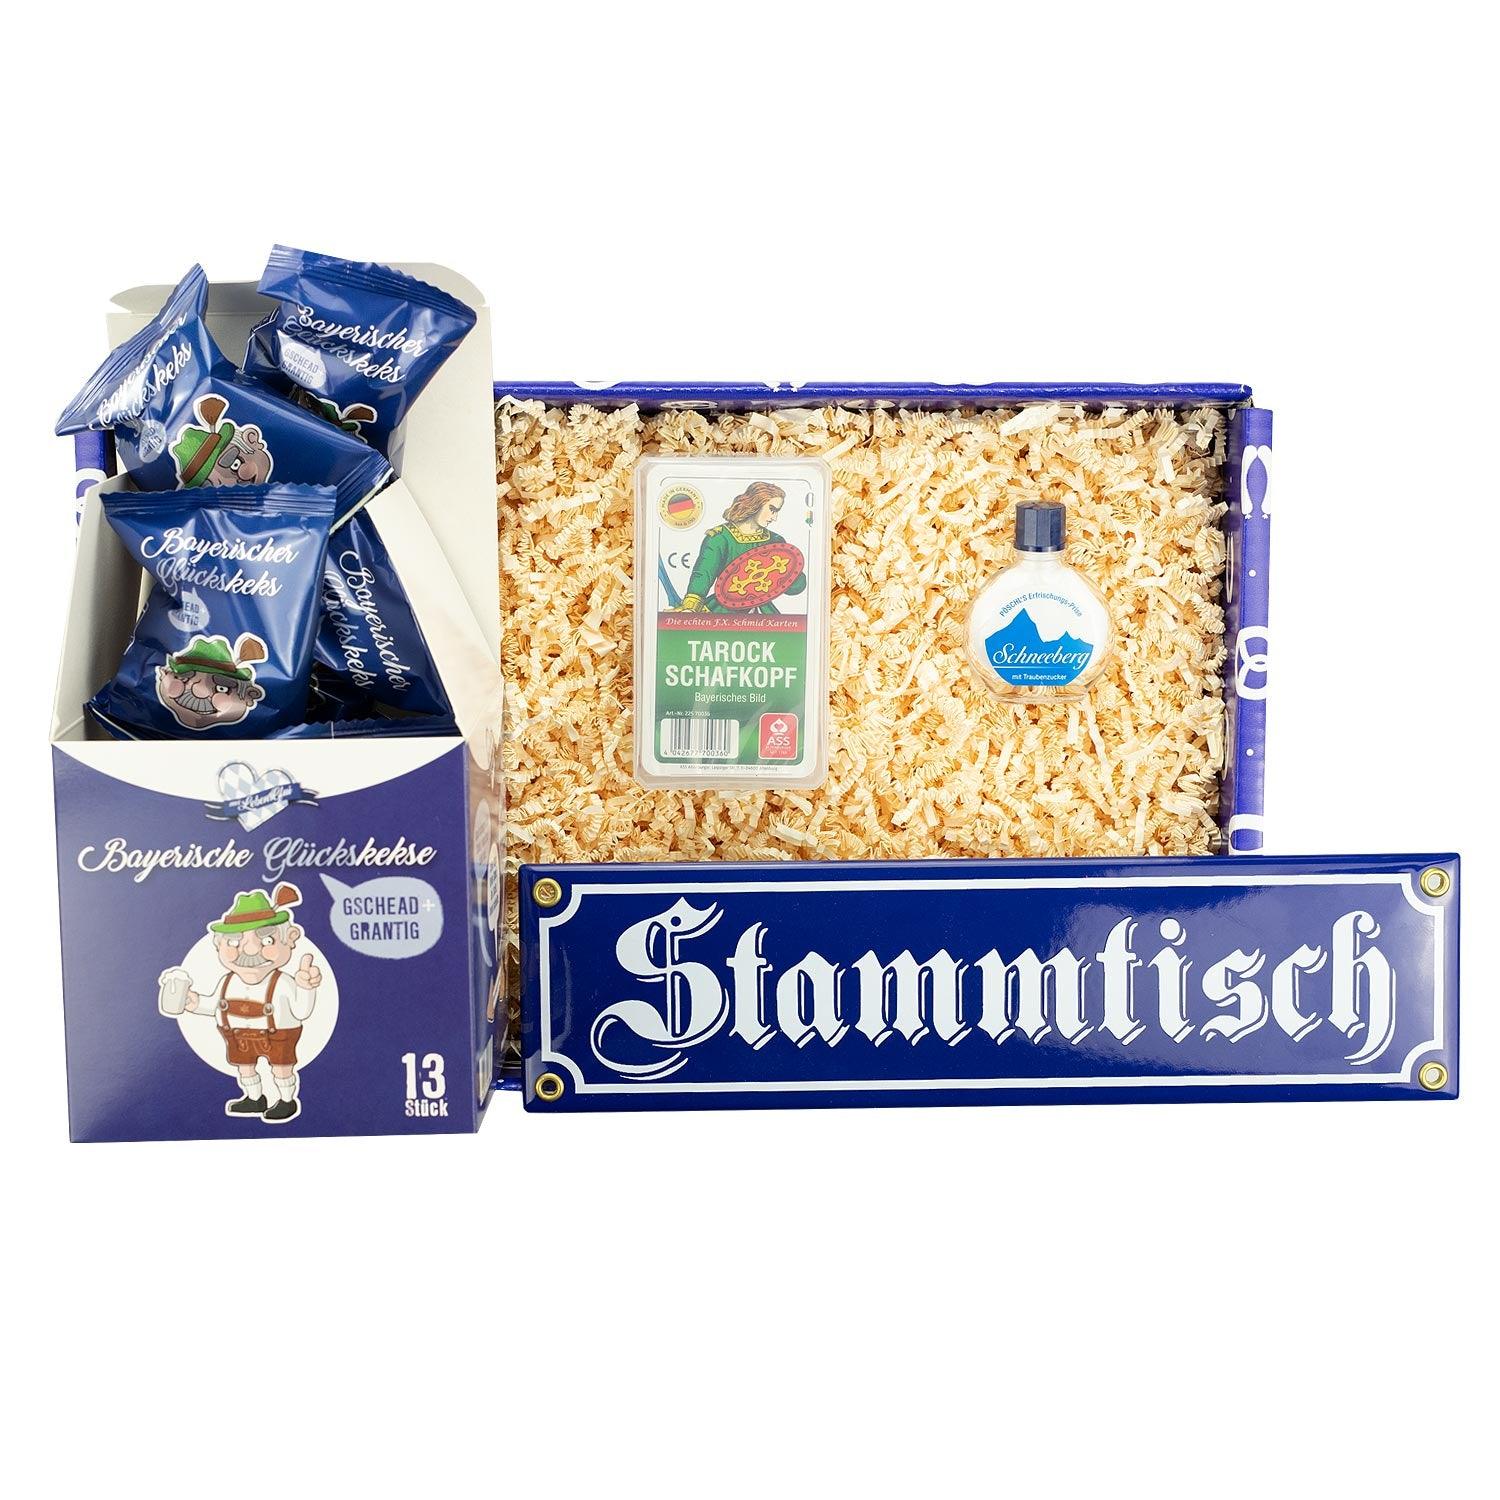 Geschenkbox "Stammtisch" - bavariashop - mei LebensGfui